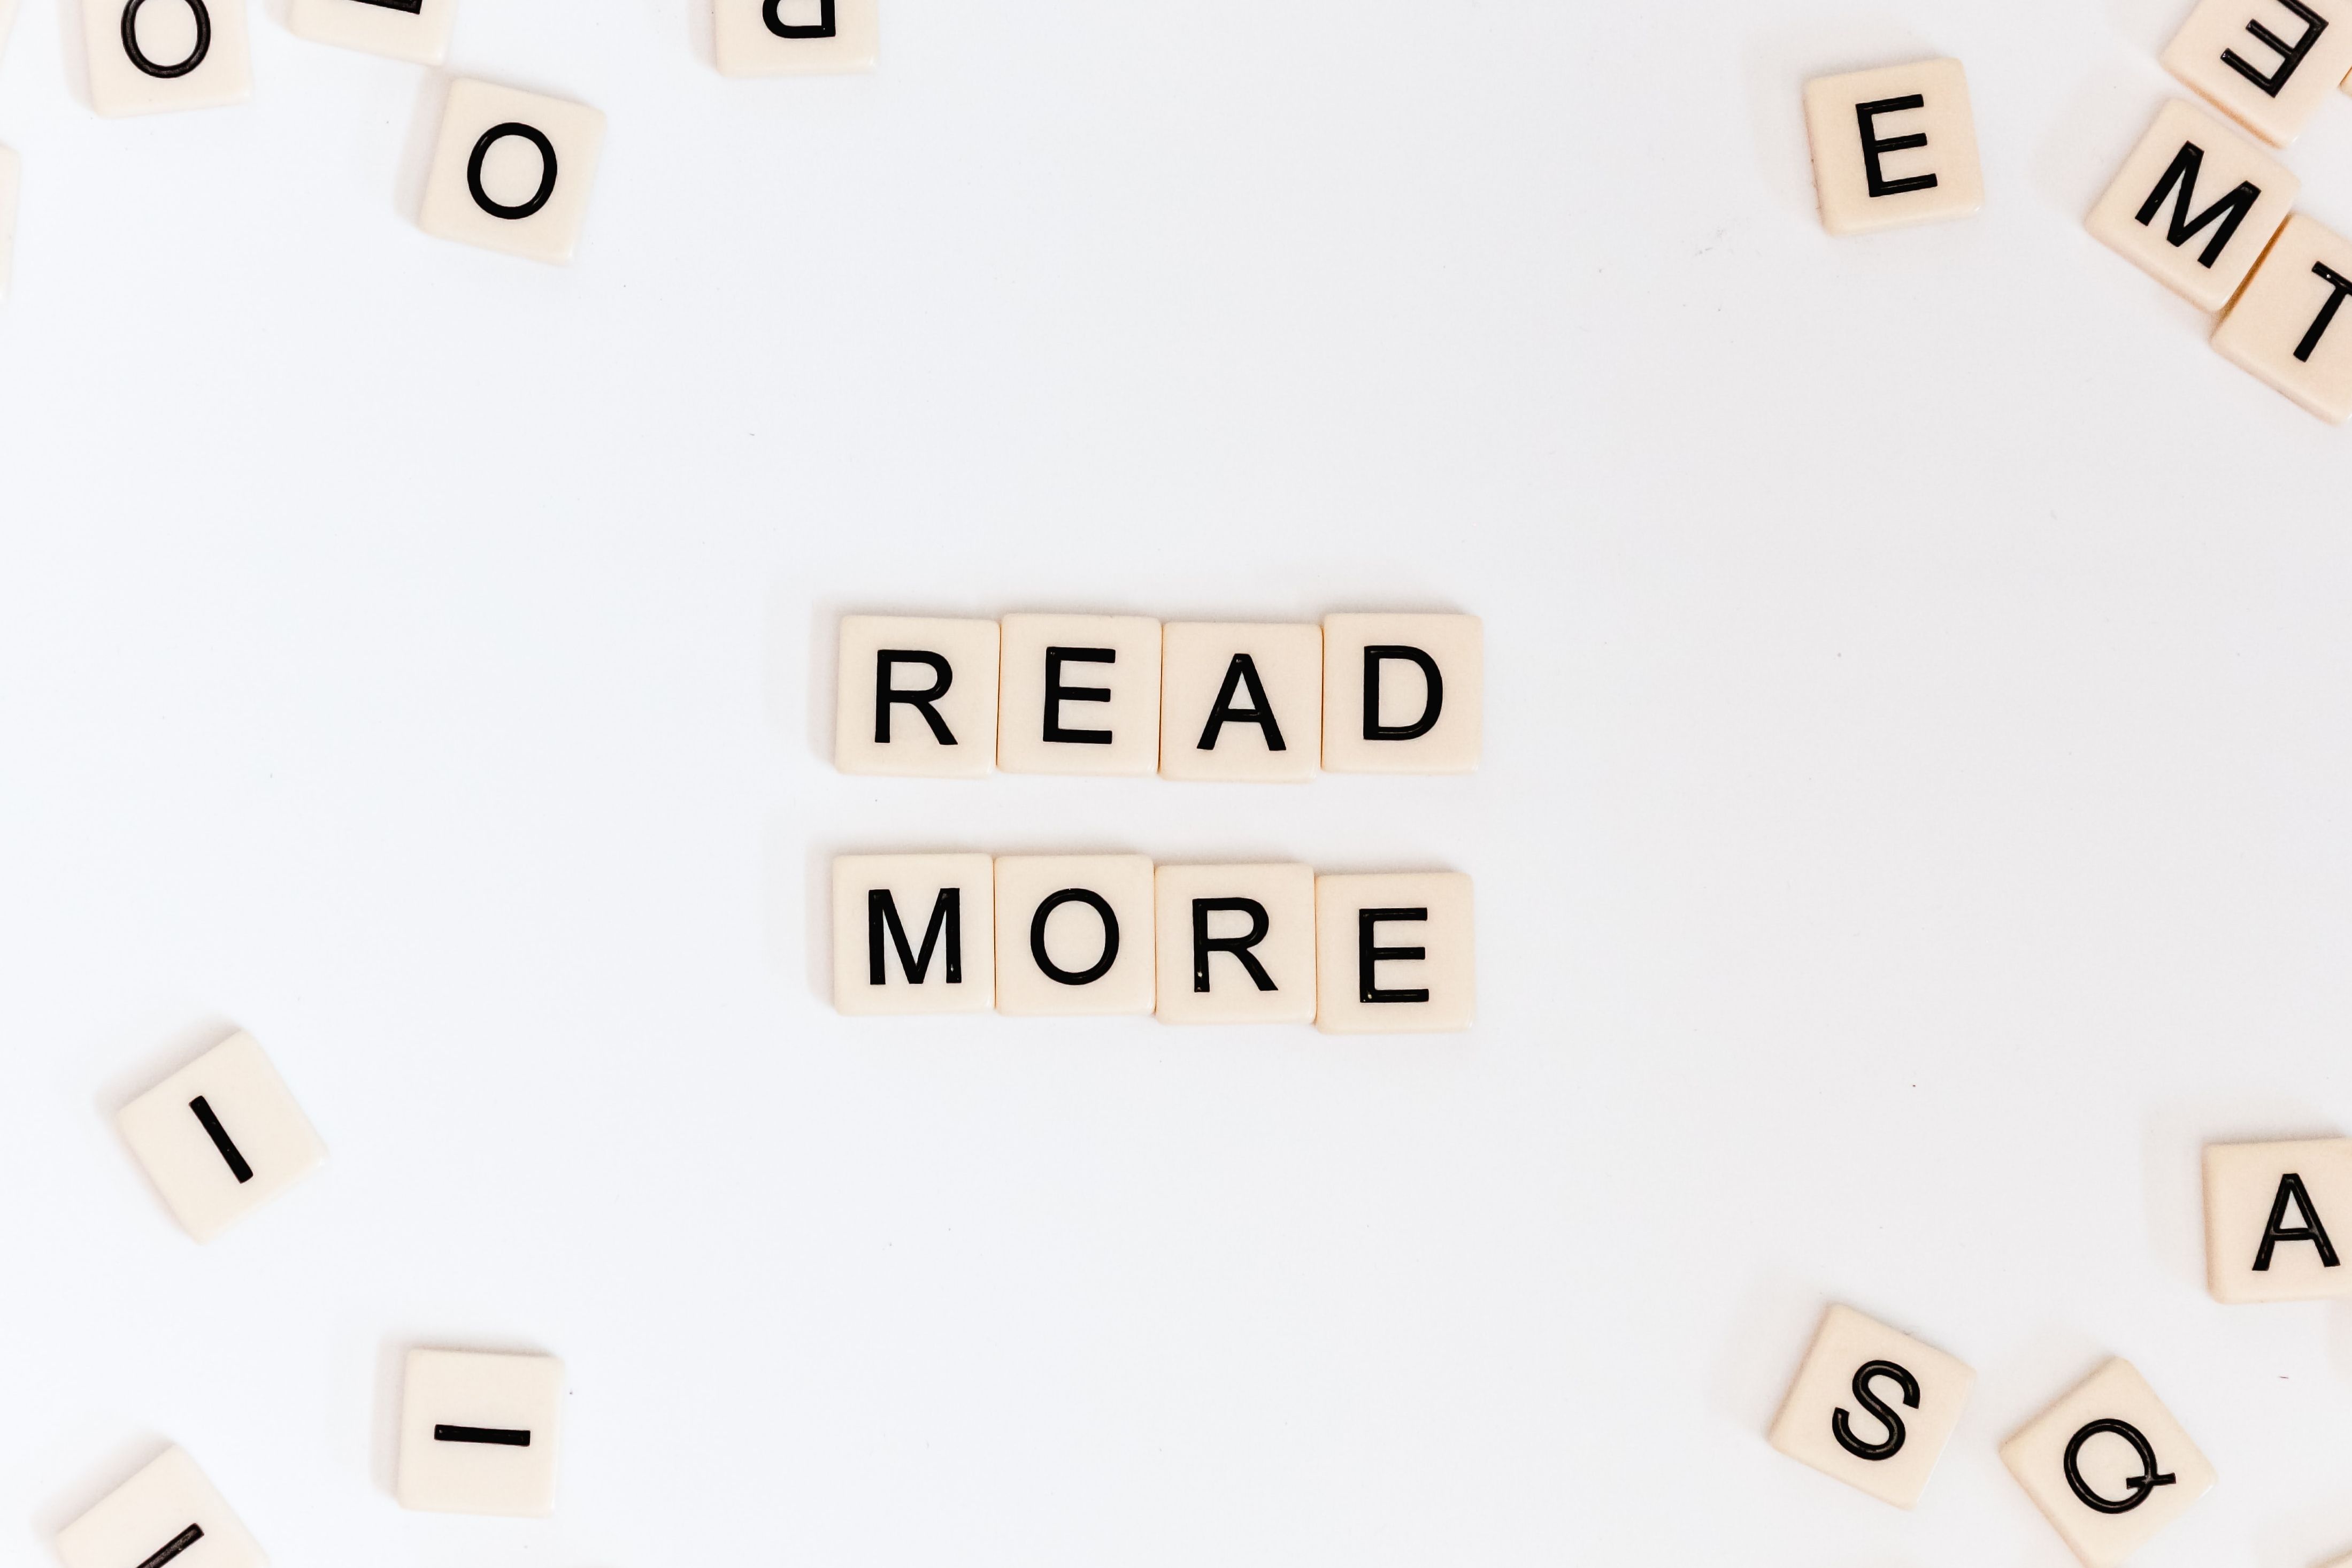 "Read More" geschrieben mit Scrabble-Buchstaben